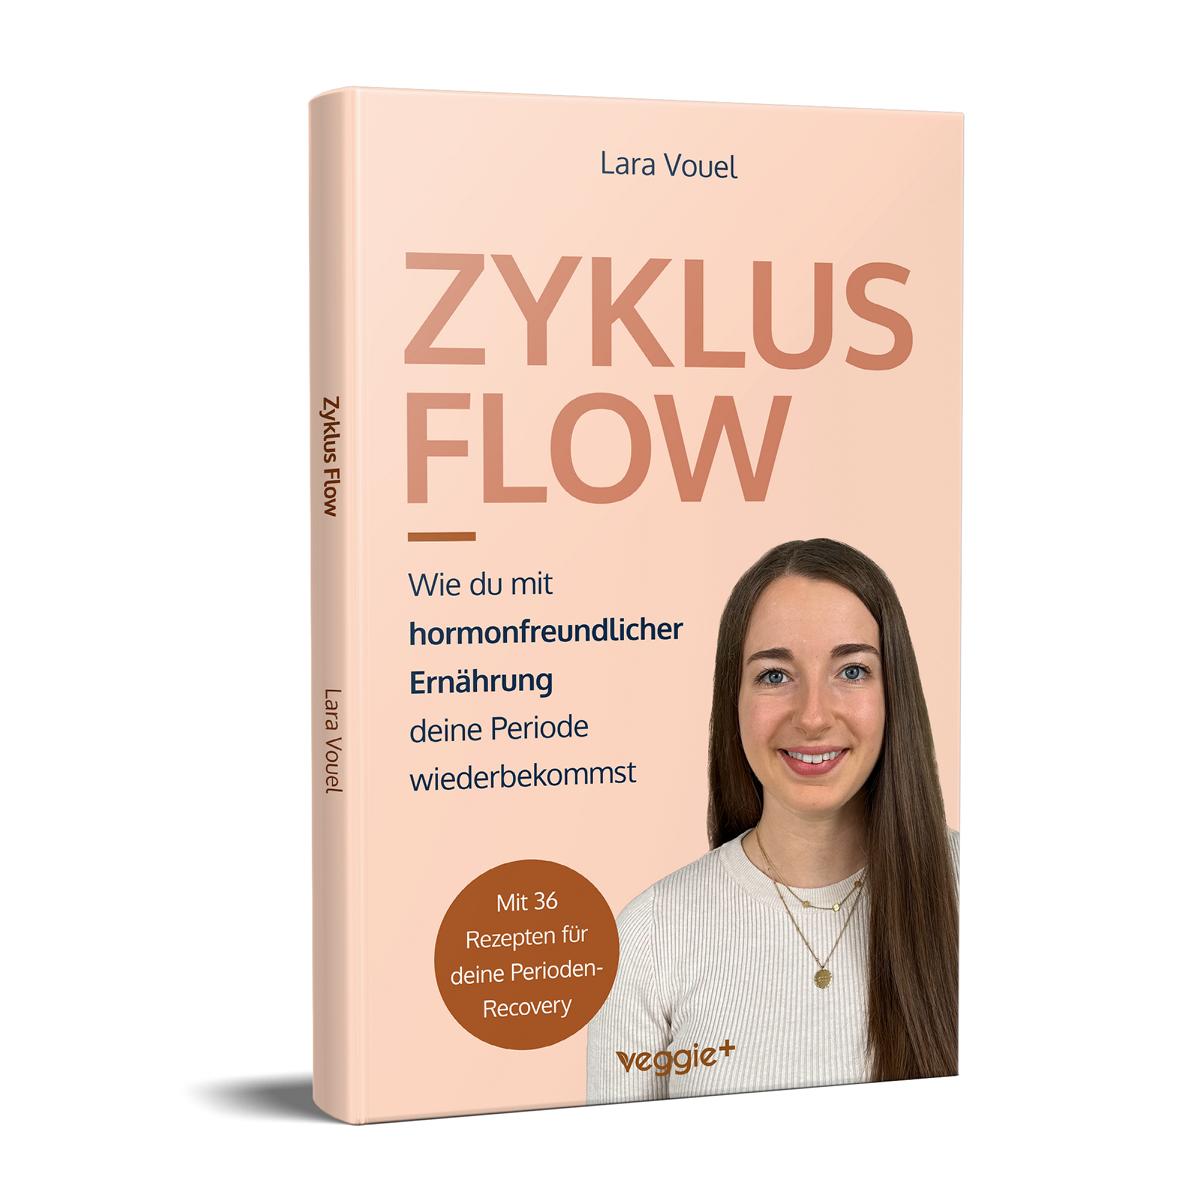 Zyklus Flow: Wie du mit hormonfreundlicher Ernährung deine Periode wiederbekommst (Meine besten Tipps und Rezepte bei hypothalamischer Amenorrhö) von Lara Vouel im veggie + Verlag